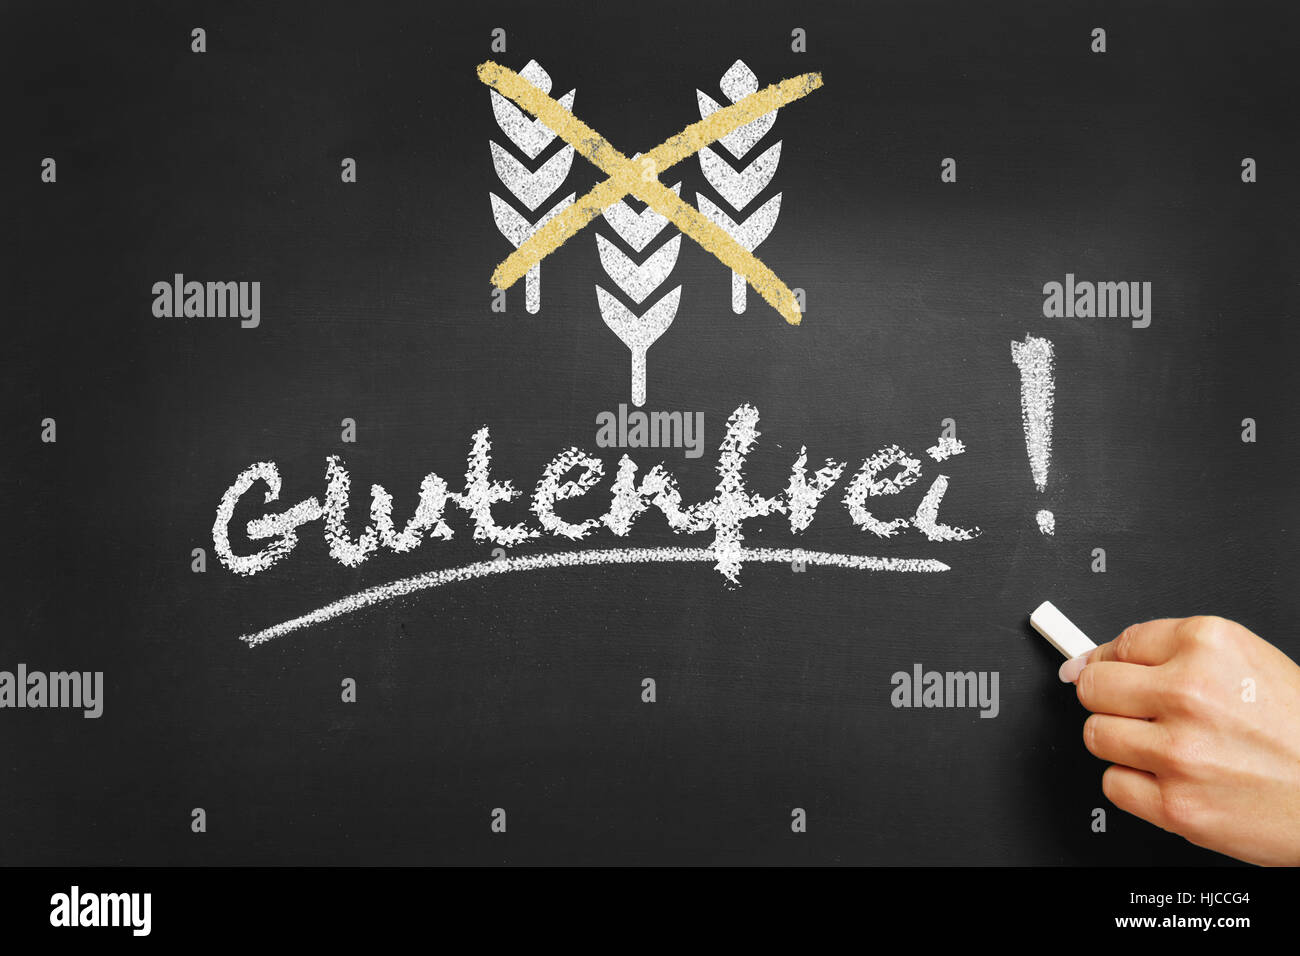 Handschrift in deutscher Sprache "Jetzt" (glutenfrei) auf einer Kreidetafel Stockfoto